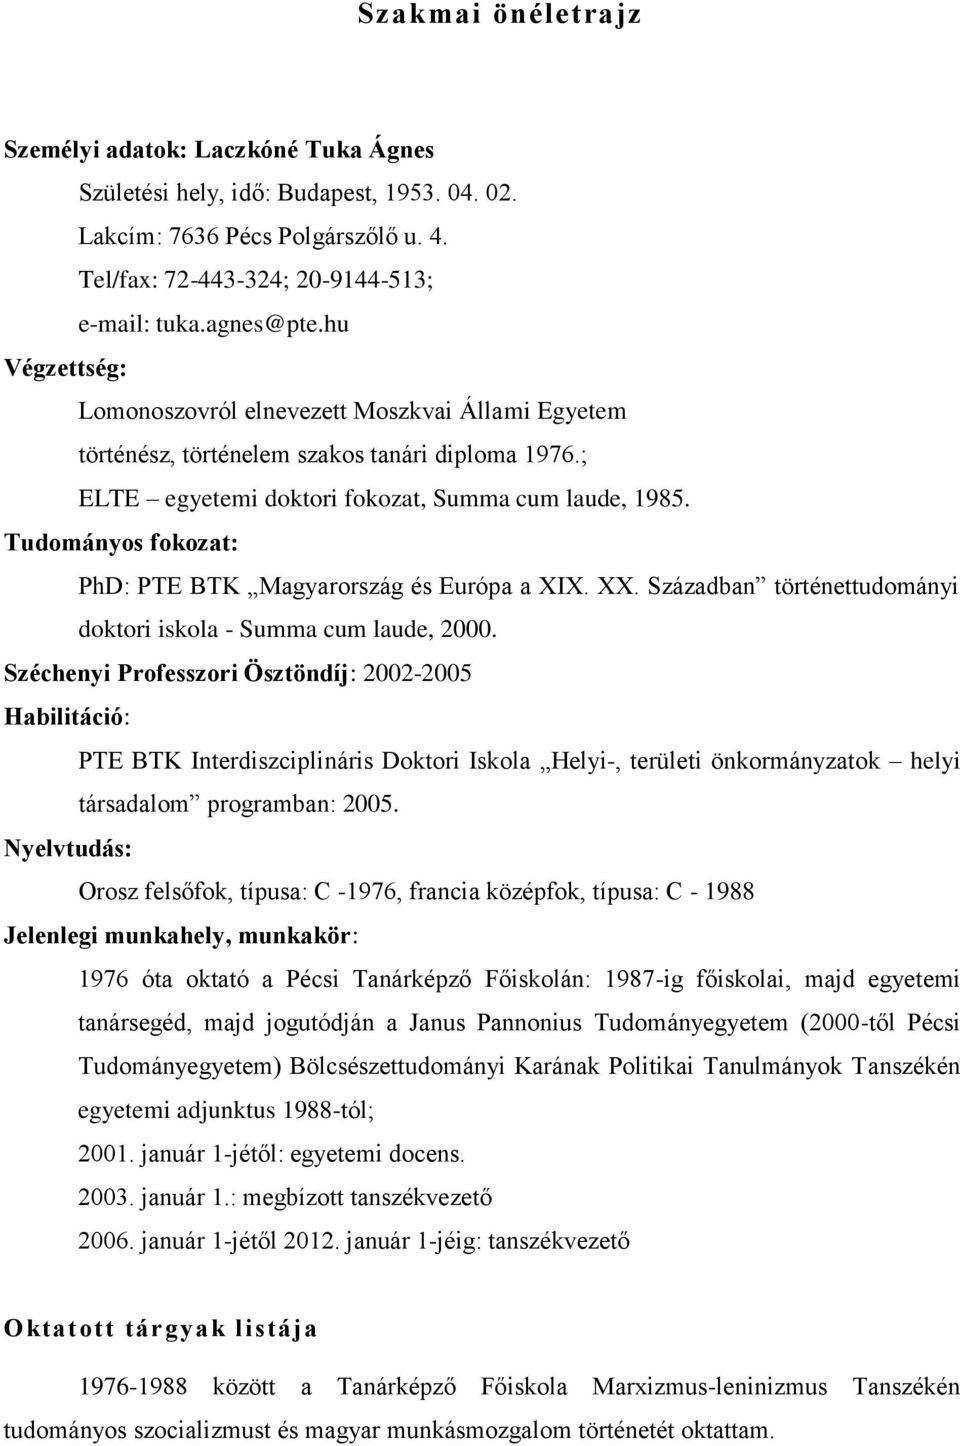 Tudományos fokozat: PhD: PTE BTK Magyarország és Európa a XIX. XX. Században történettudományi doktori iskola - Summa cum laude, 2000.